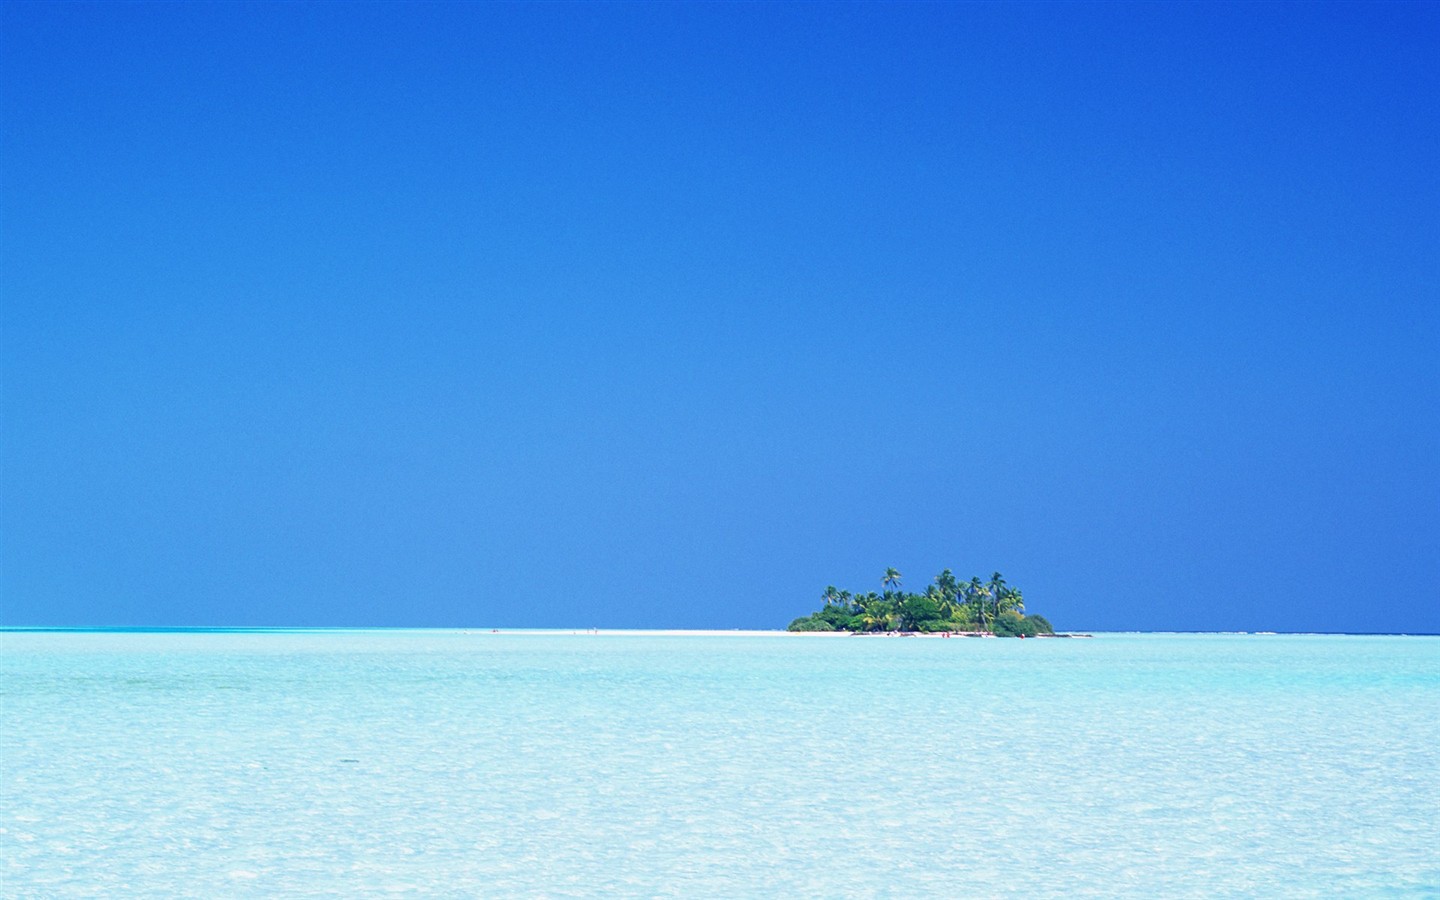 Maledivy vody a modrou oblohu #21 - 1440x900